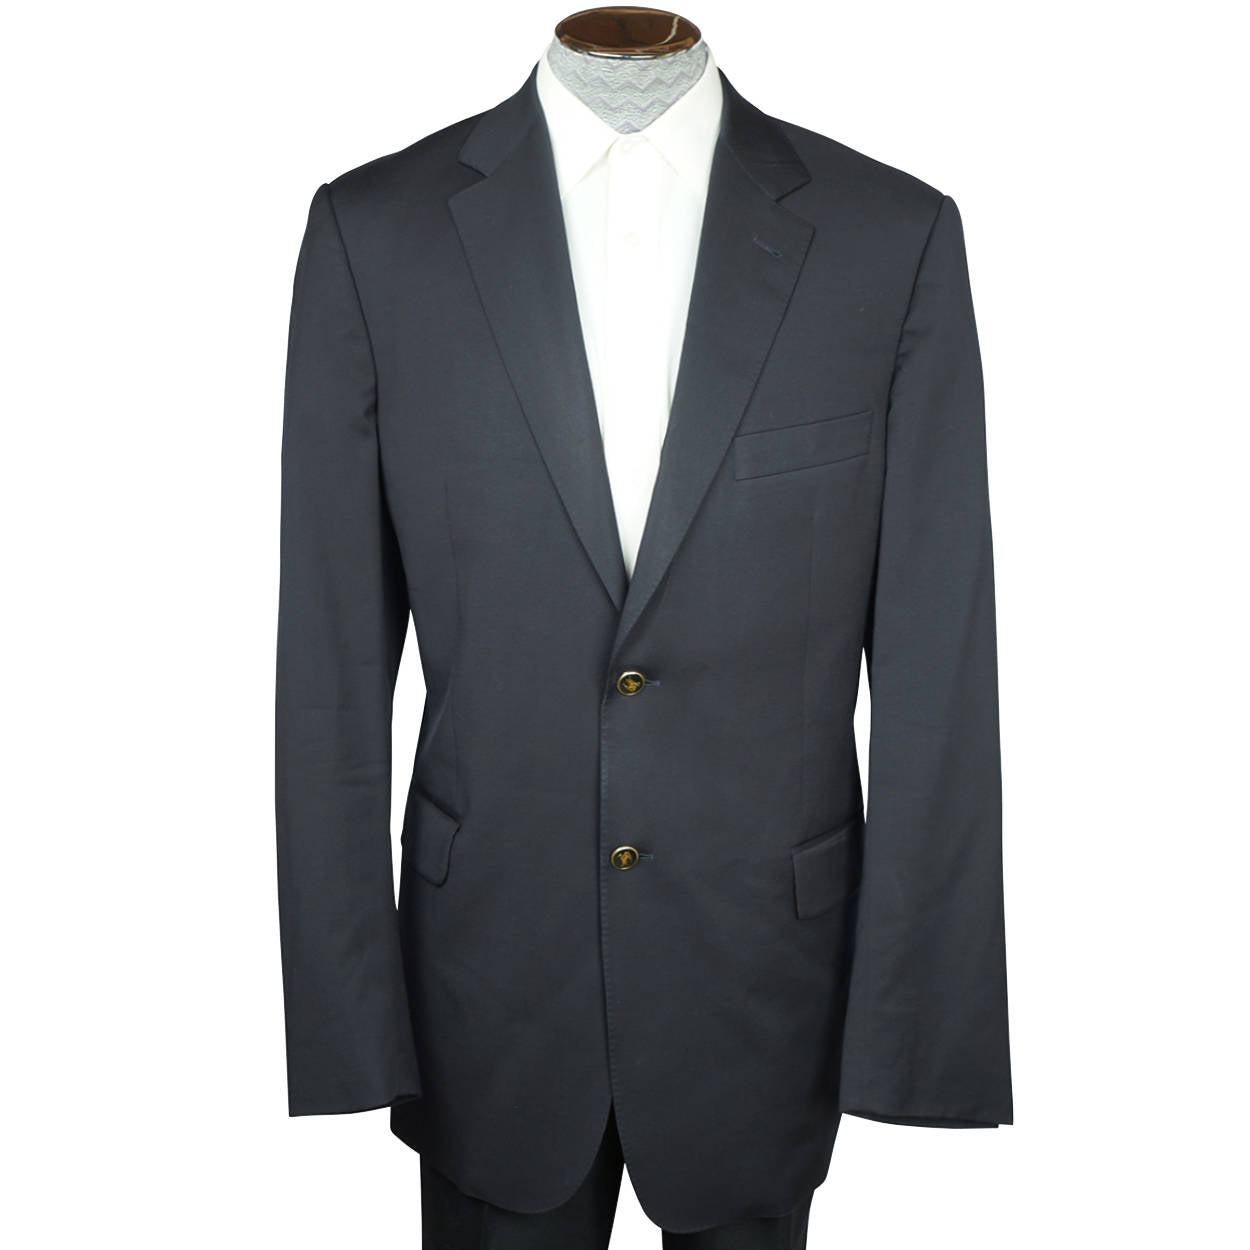 Burberry London Black Blazer Super 120 Wool Jacket Mens Sport Coat Size L  Tall